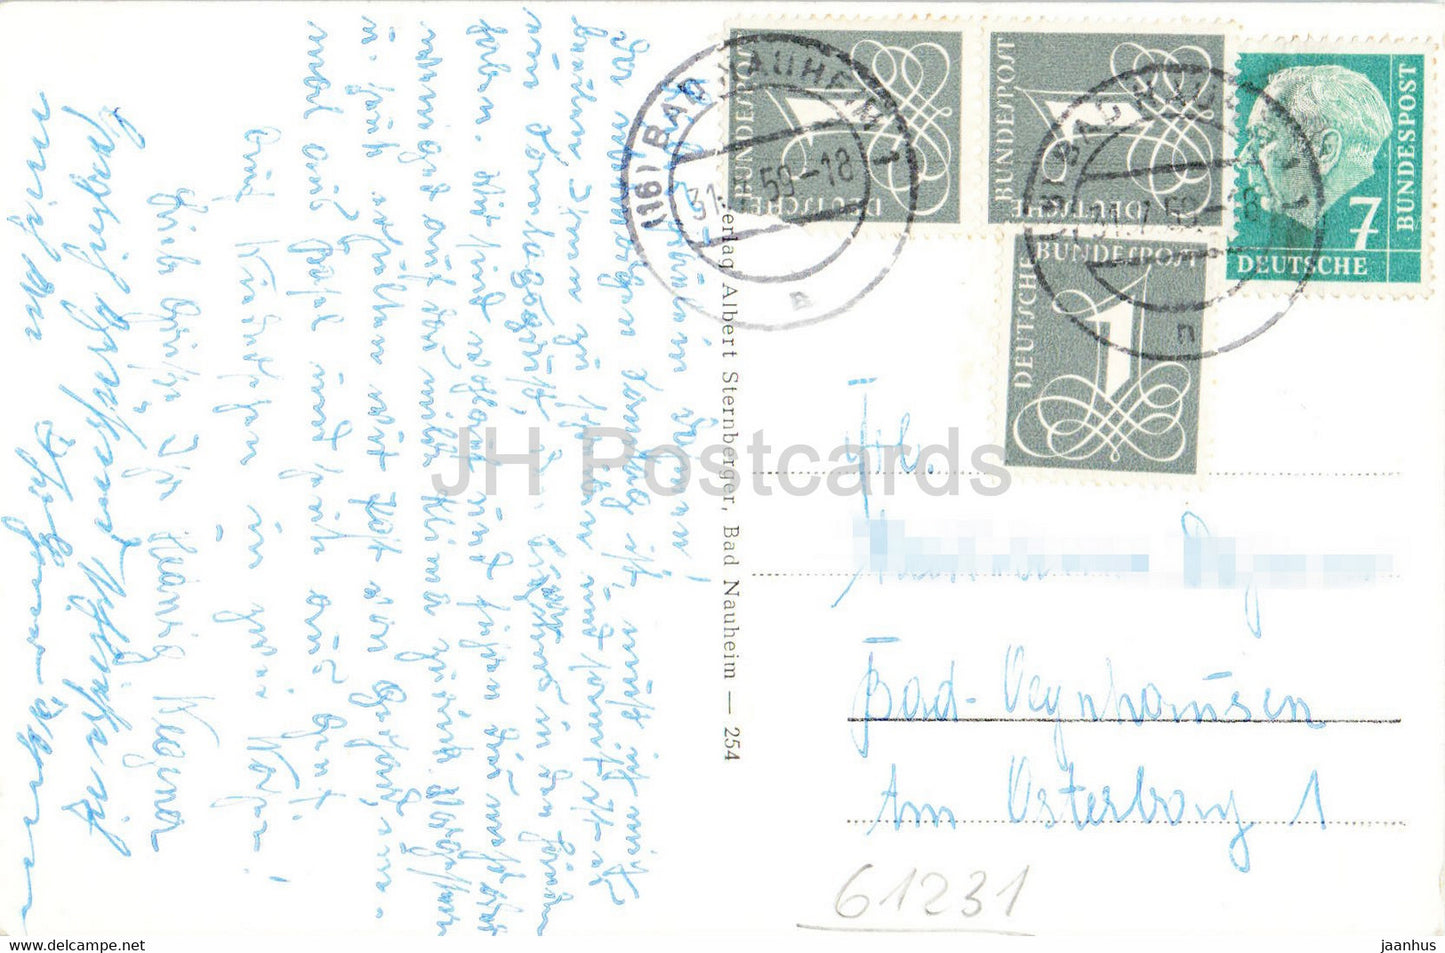 Bad Nauheim - Sprudelhof - old postcard - 1959 - Germany - used